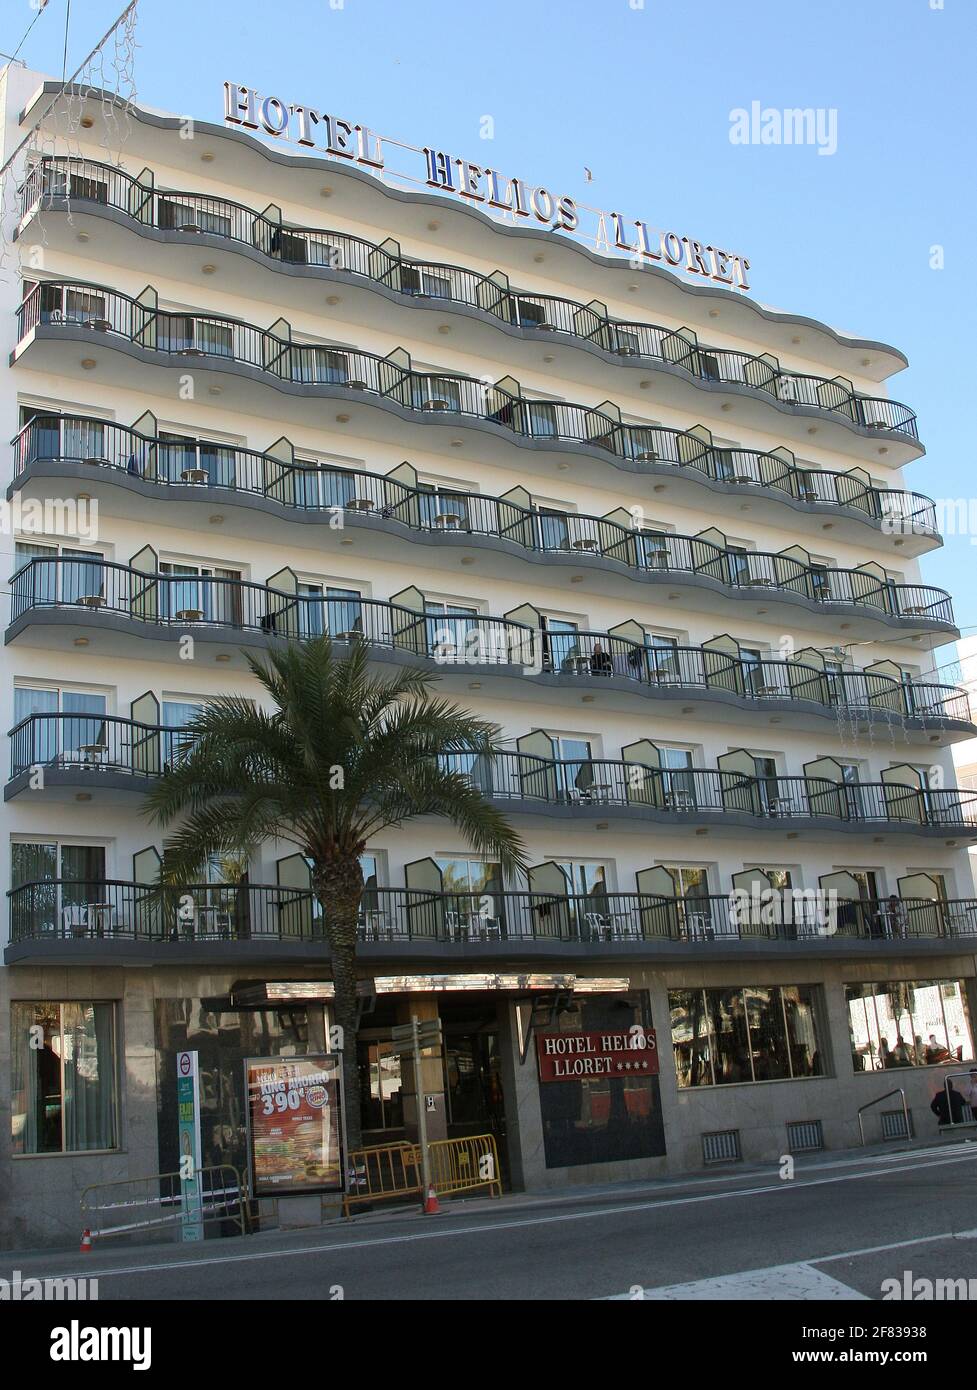 Hotel Helios Lloret dans la station balnéaire de Lloret de Mar sur la Costa Brava près de Calella en Catalogne Espagne UE 2019 Banque D'Images